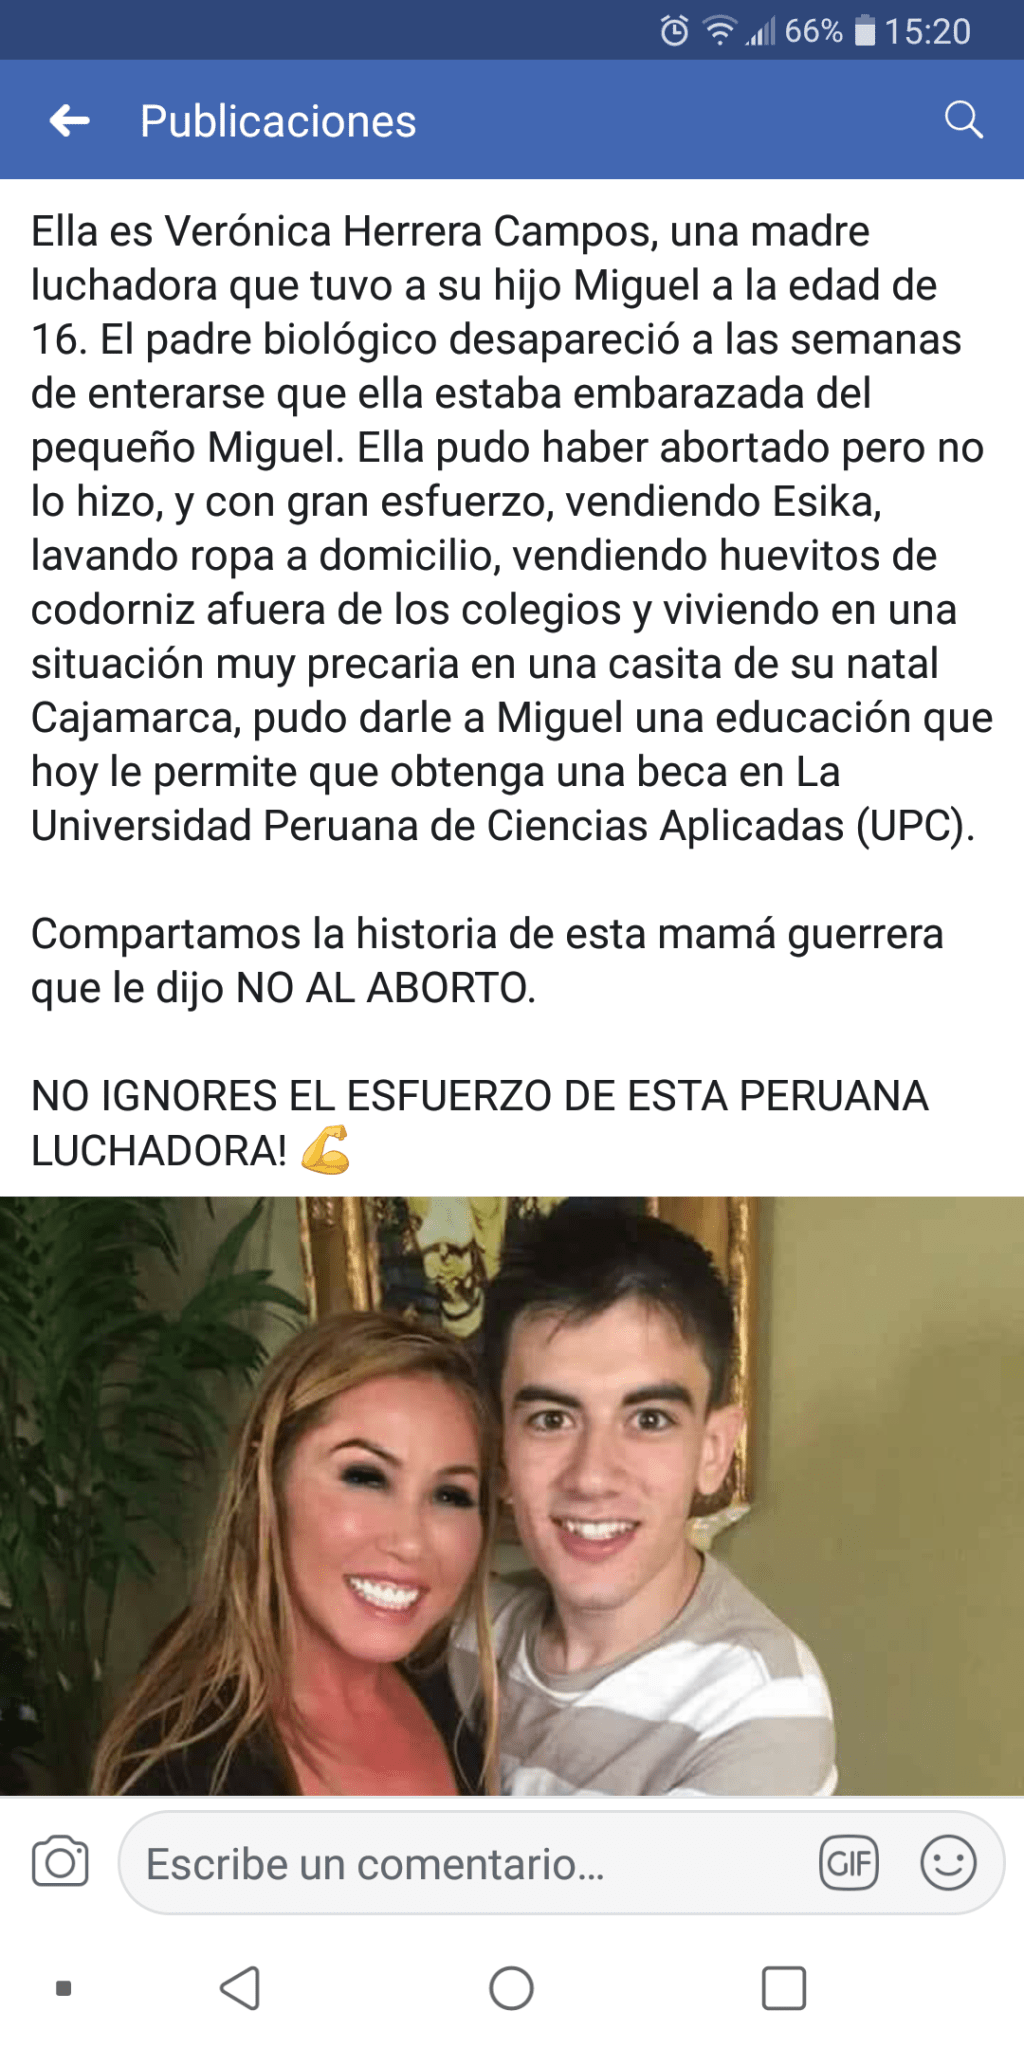 Vía Facebook: felicitan a 'Jordi ENP' pensando que era un estudiante peruano 